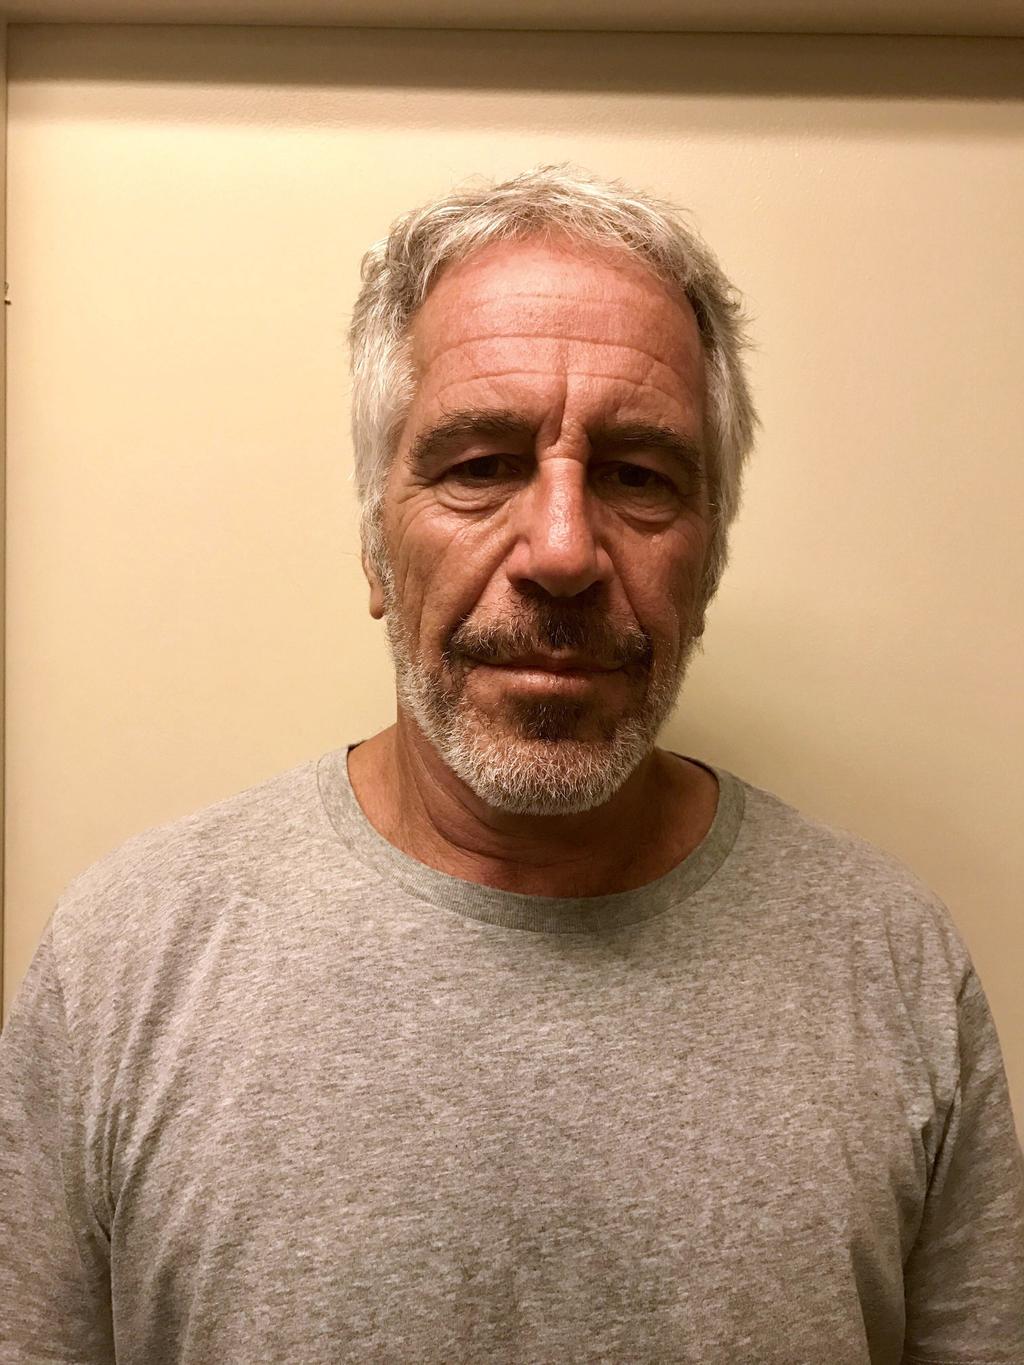 Juicio contra Epstein puede comenzar entre junio y septiembre de 2020